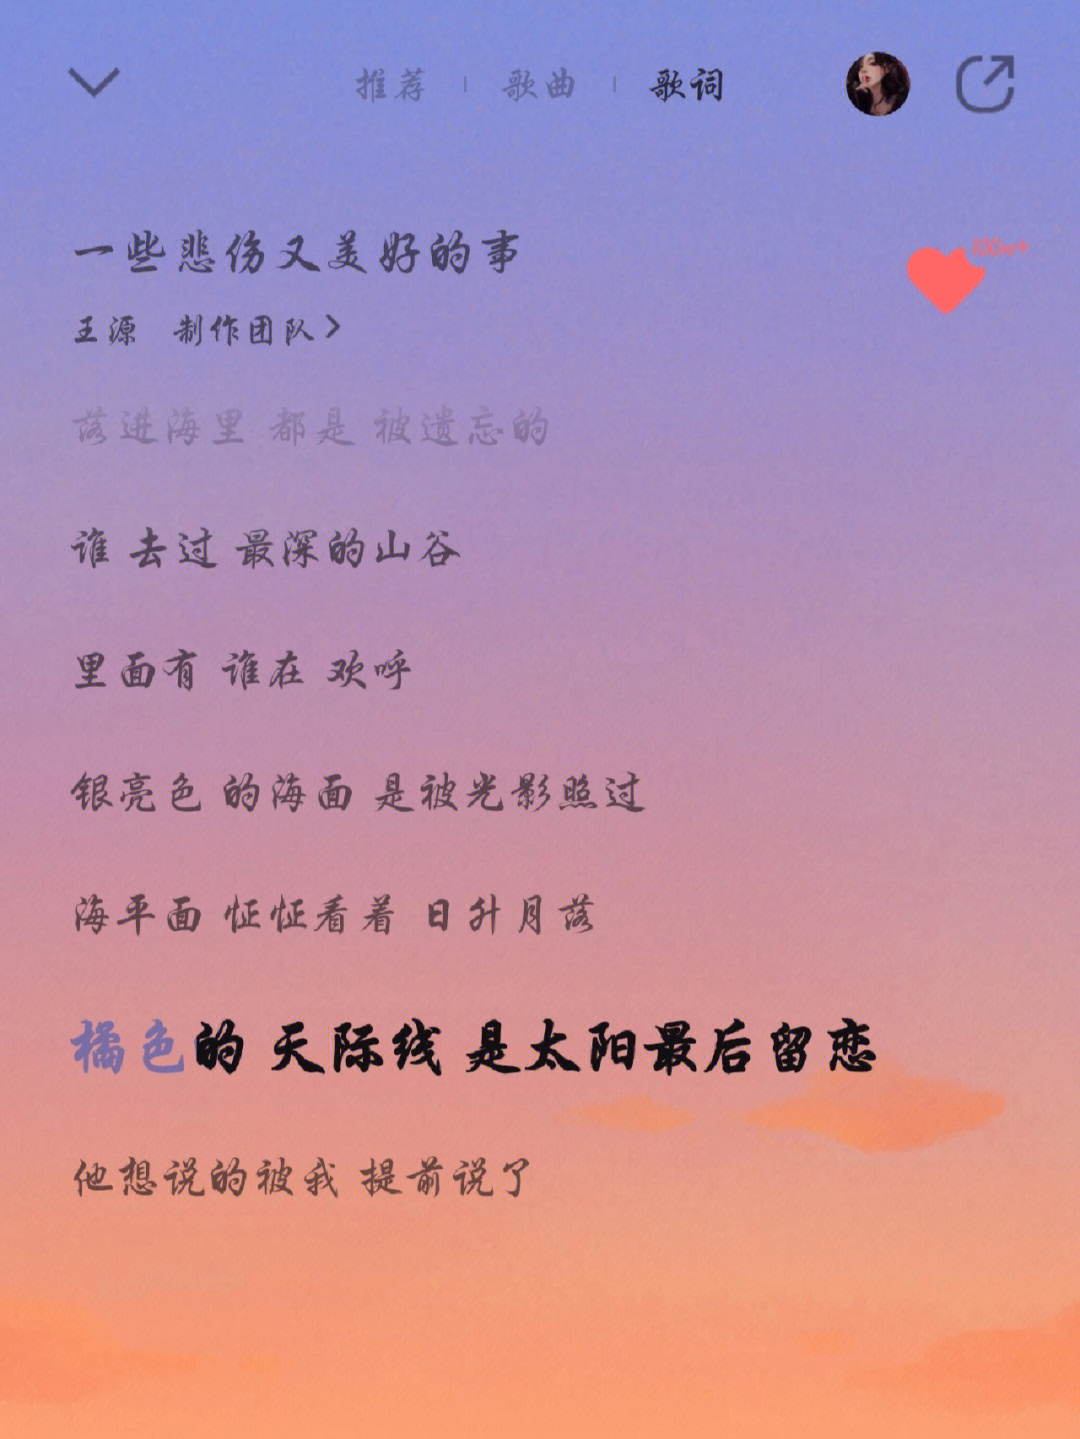 源哥在《一些悲伤又美好的事》中有提到橘色的天际线,是太阳最后留恋